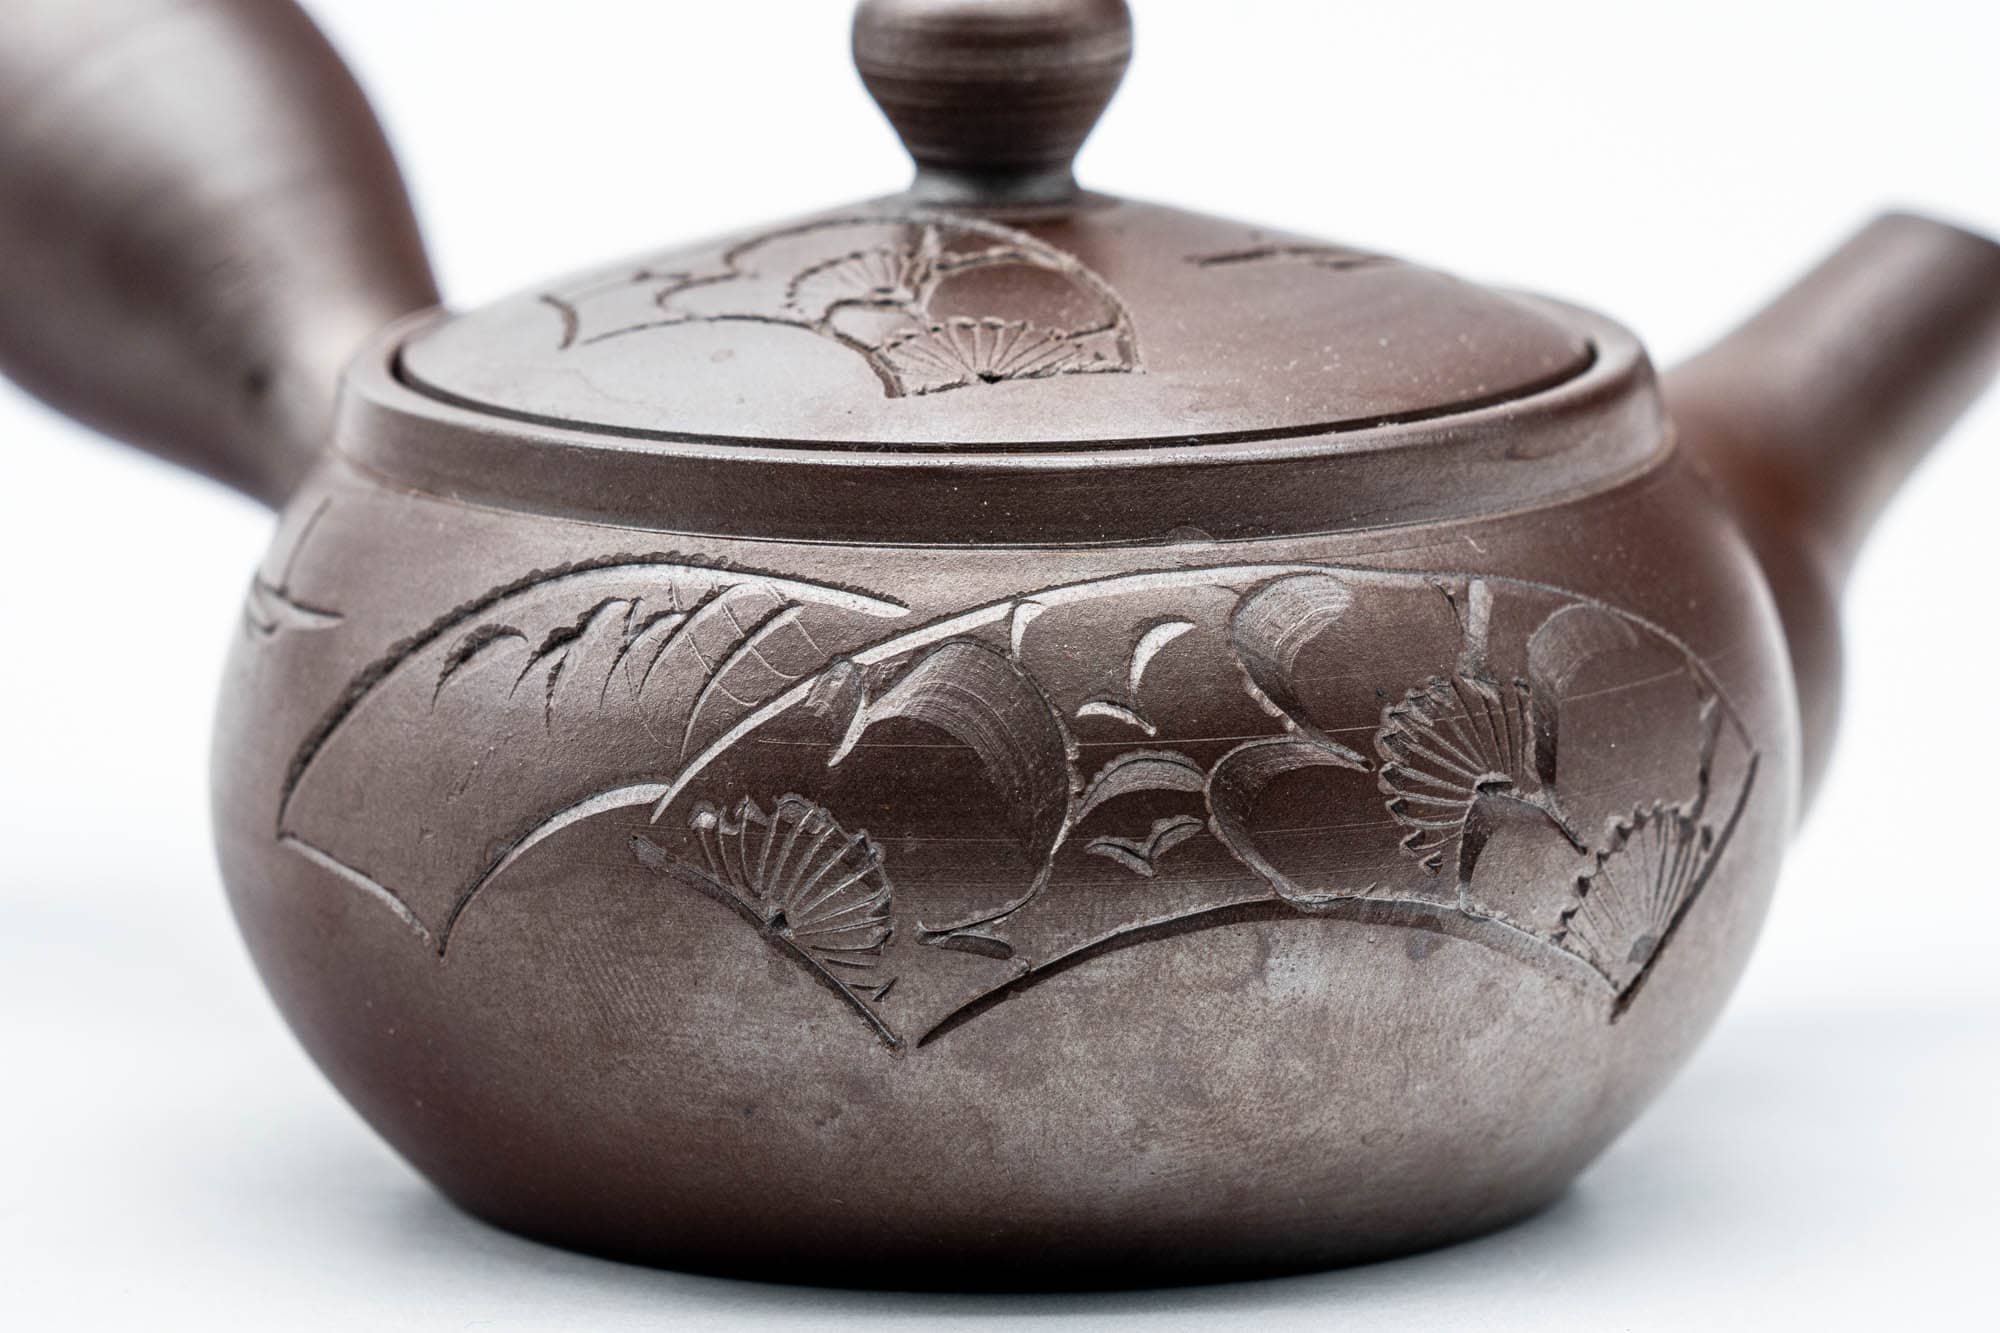 Japanese Kyusu - Floral Engraved Banko-yaki Ceramic Teapot - 120ml